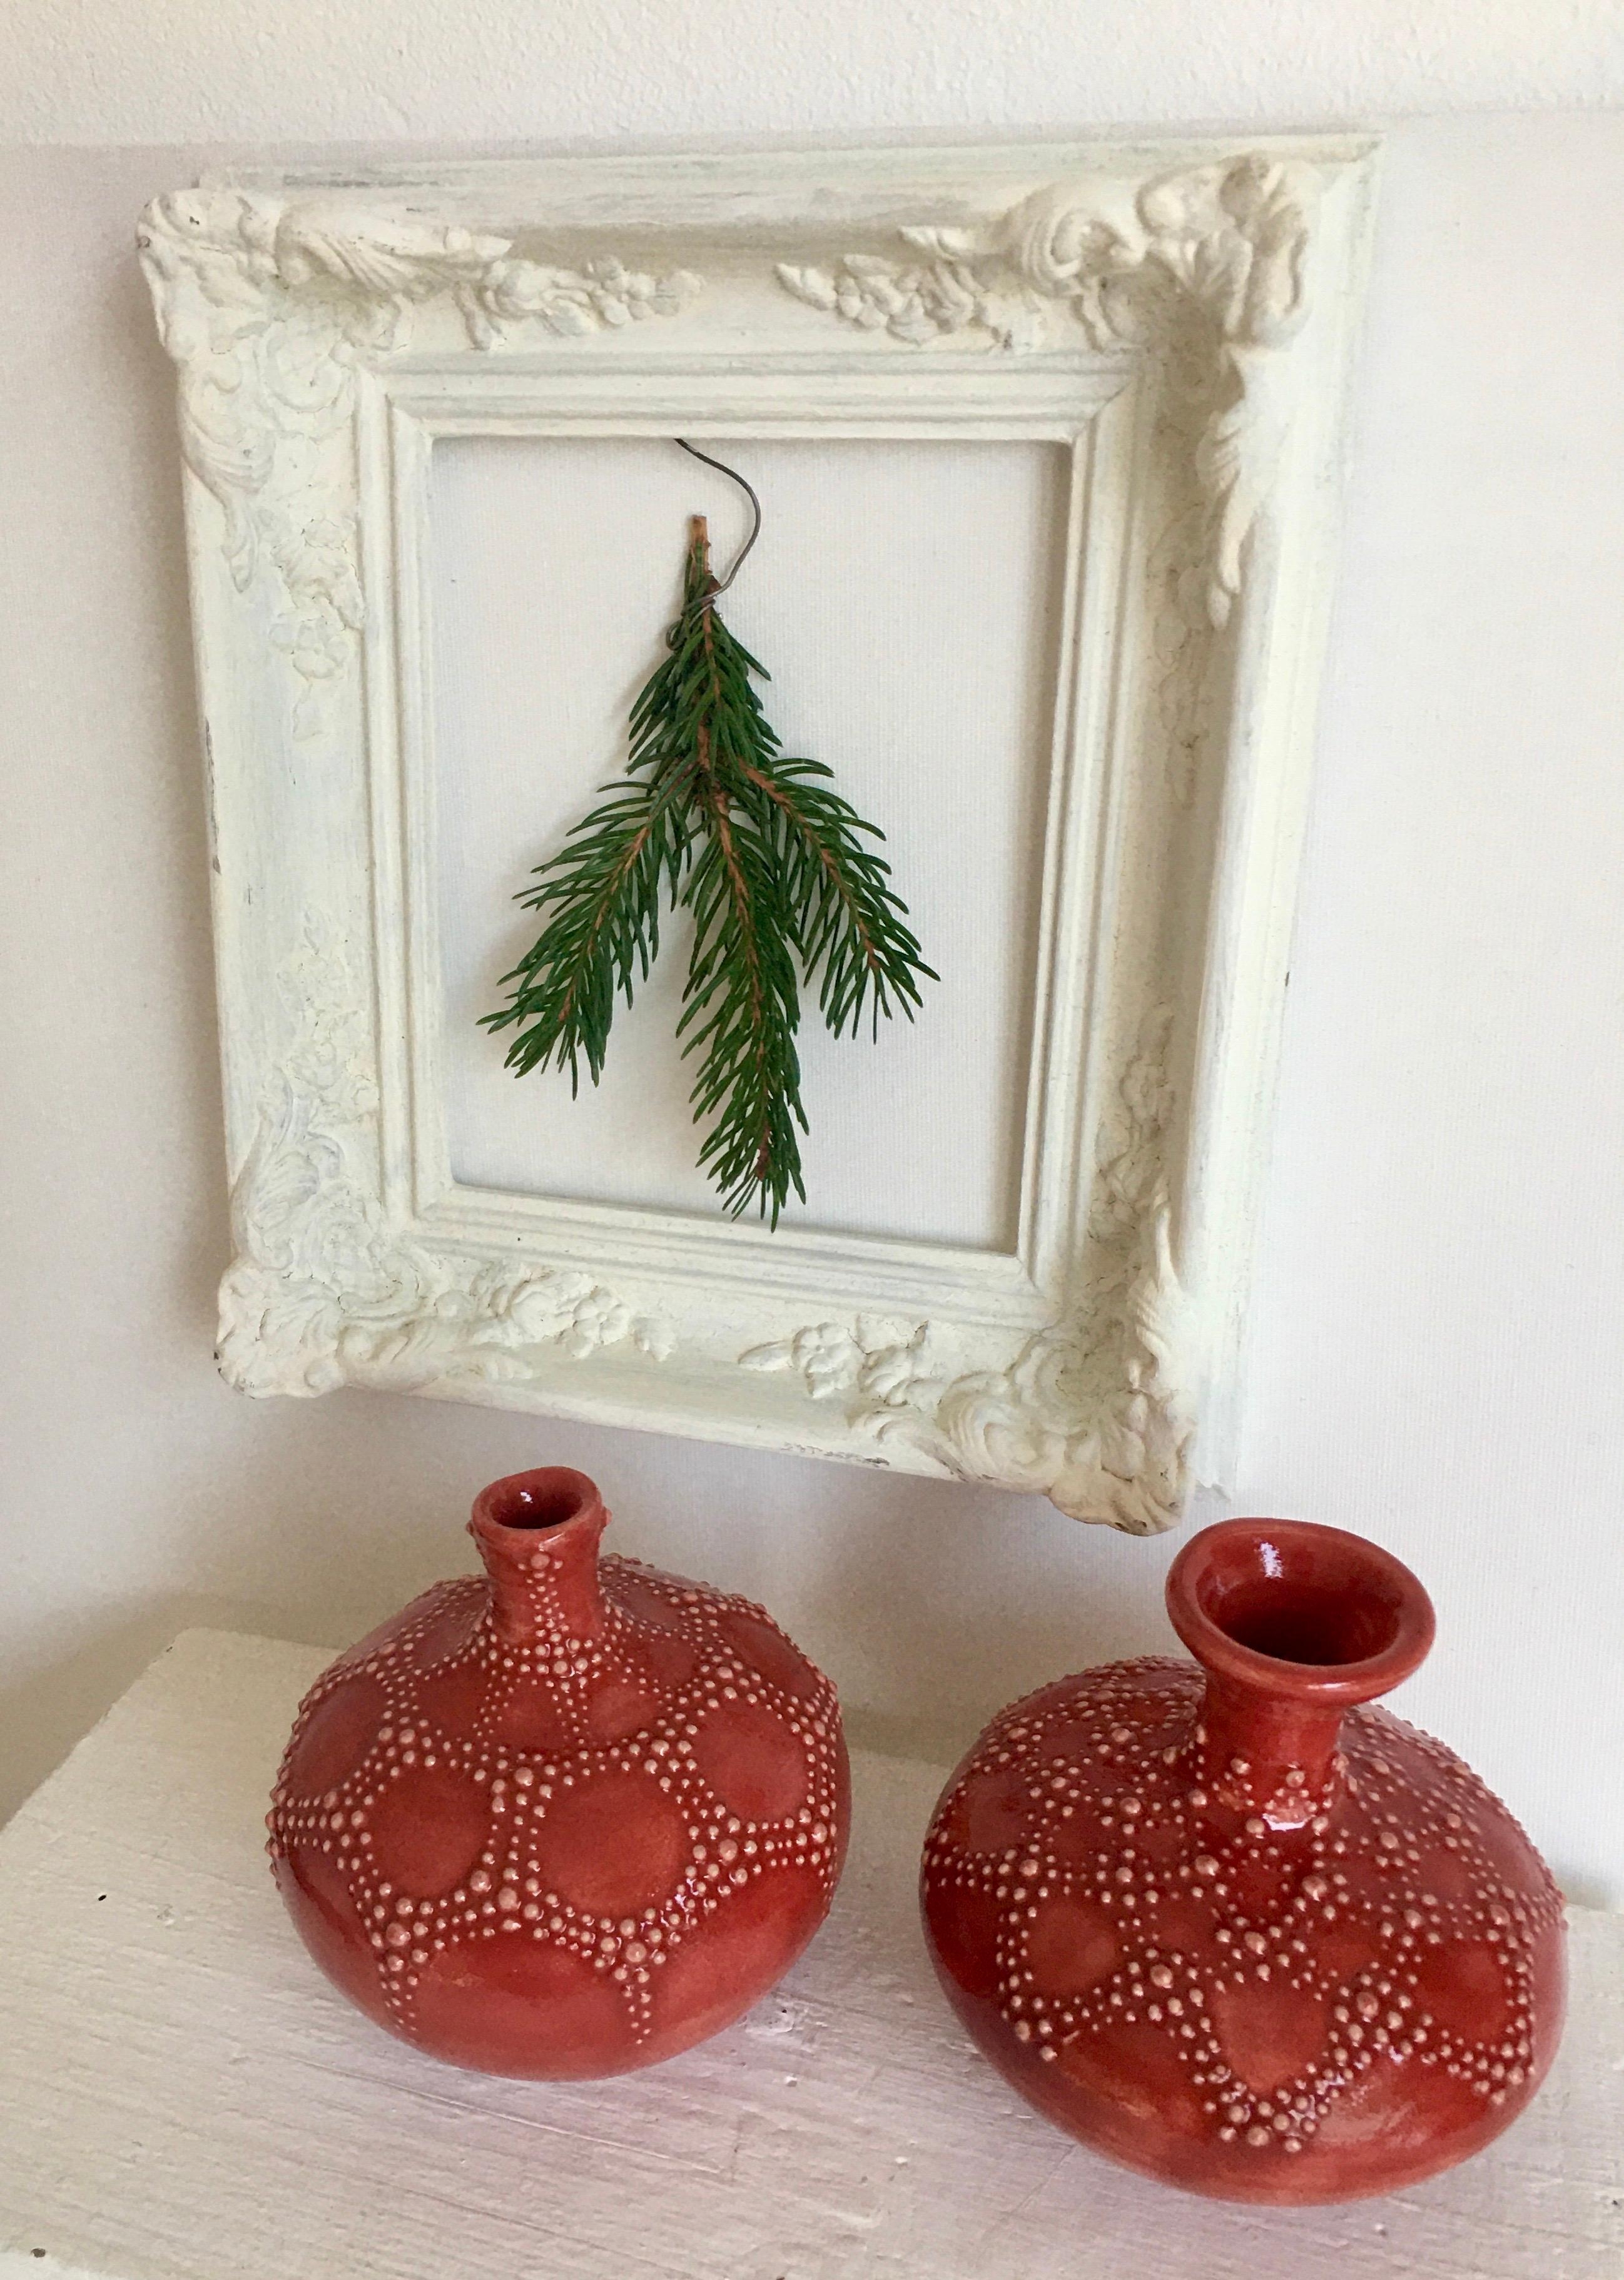 Meine Deko minimalistisch und doch opulent bei wenig Platz !
#weihnachtsdeko #weihnachten   #dekoidee #keramikvasen